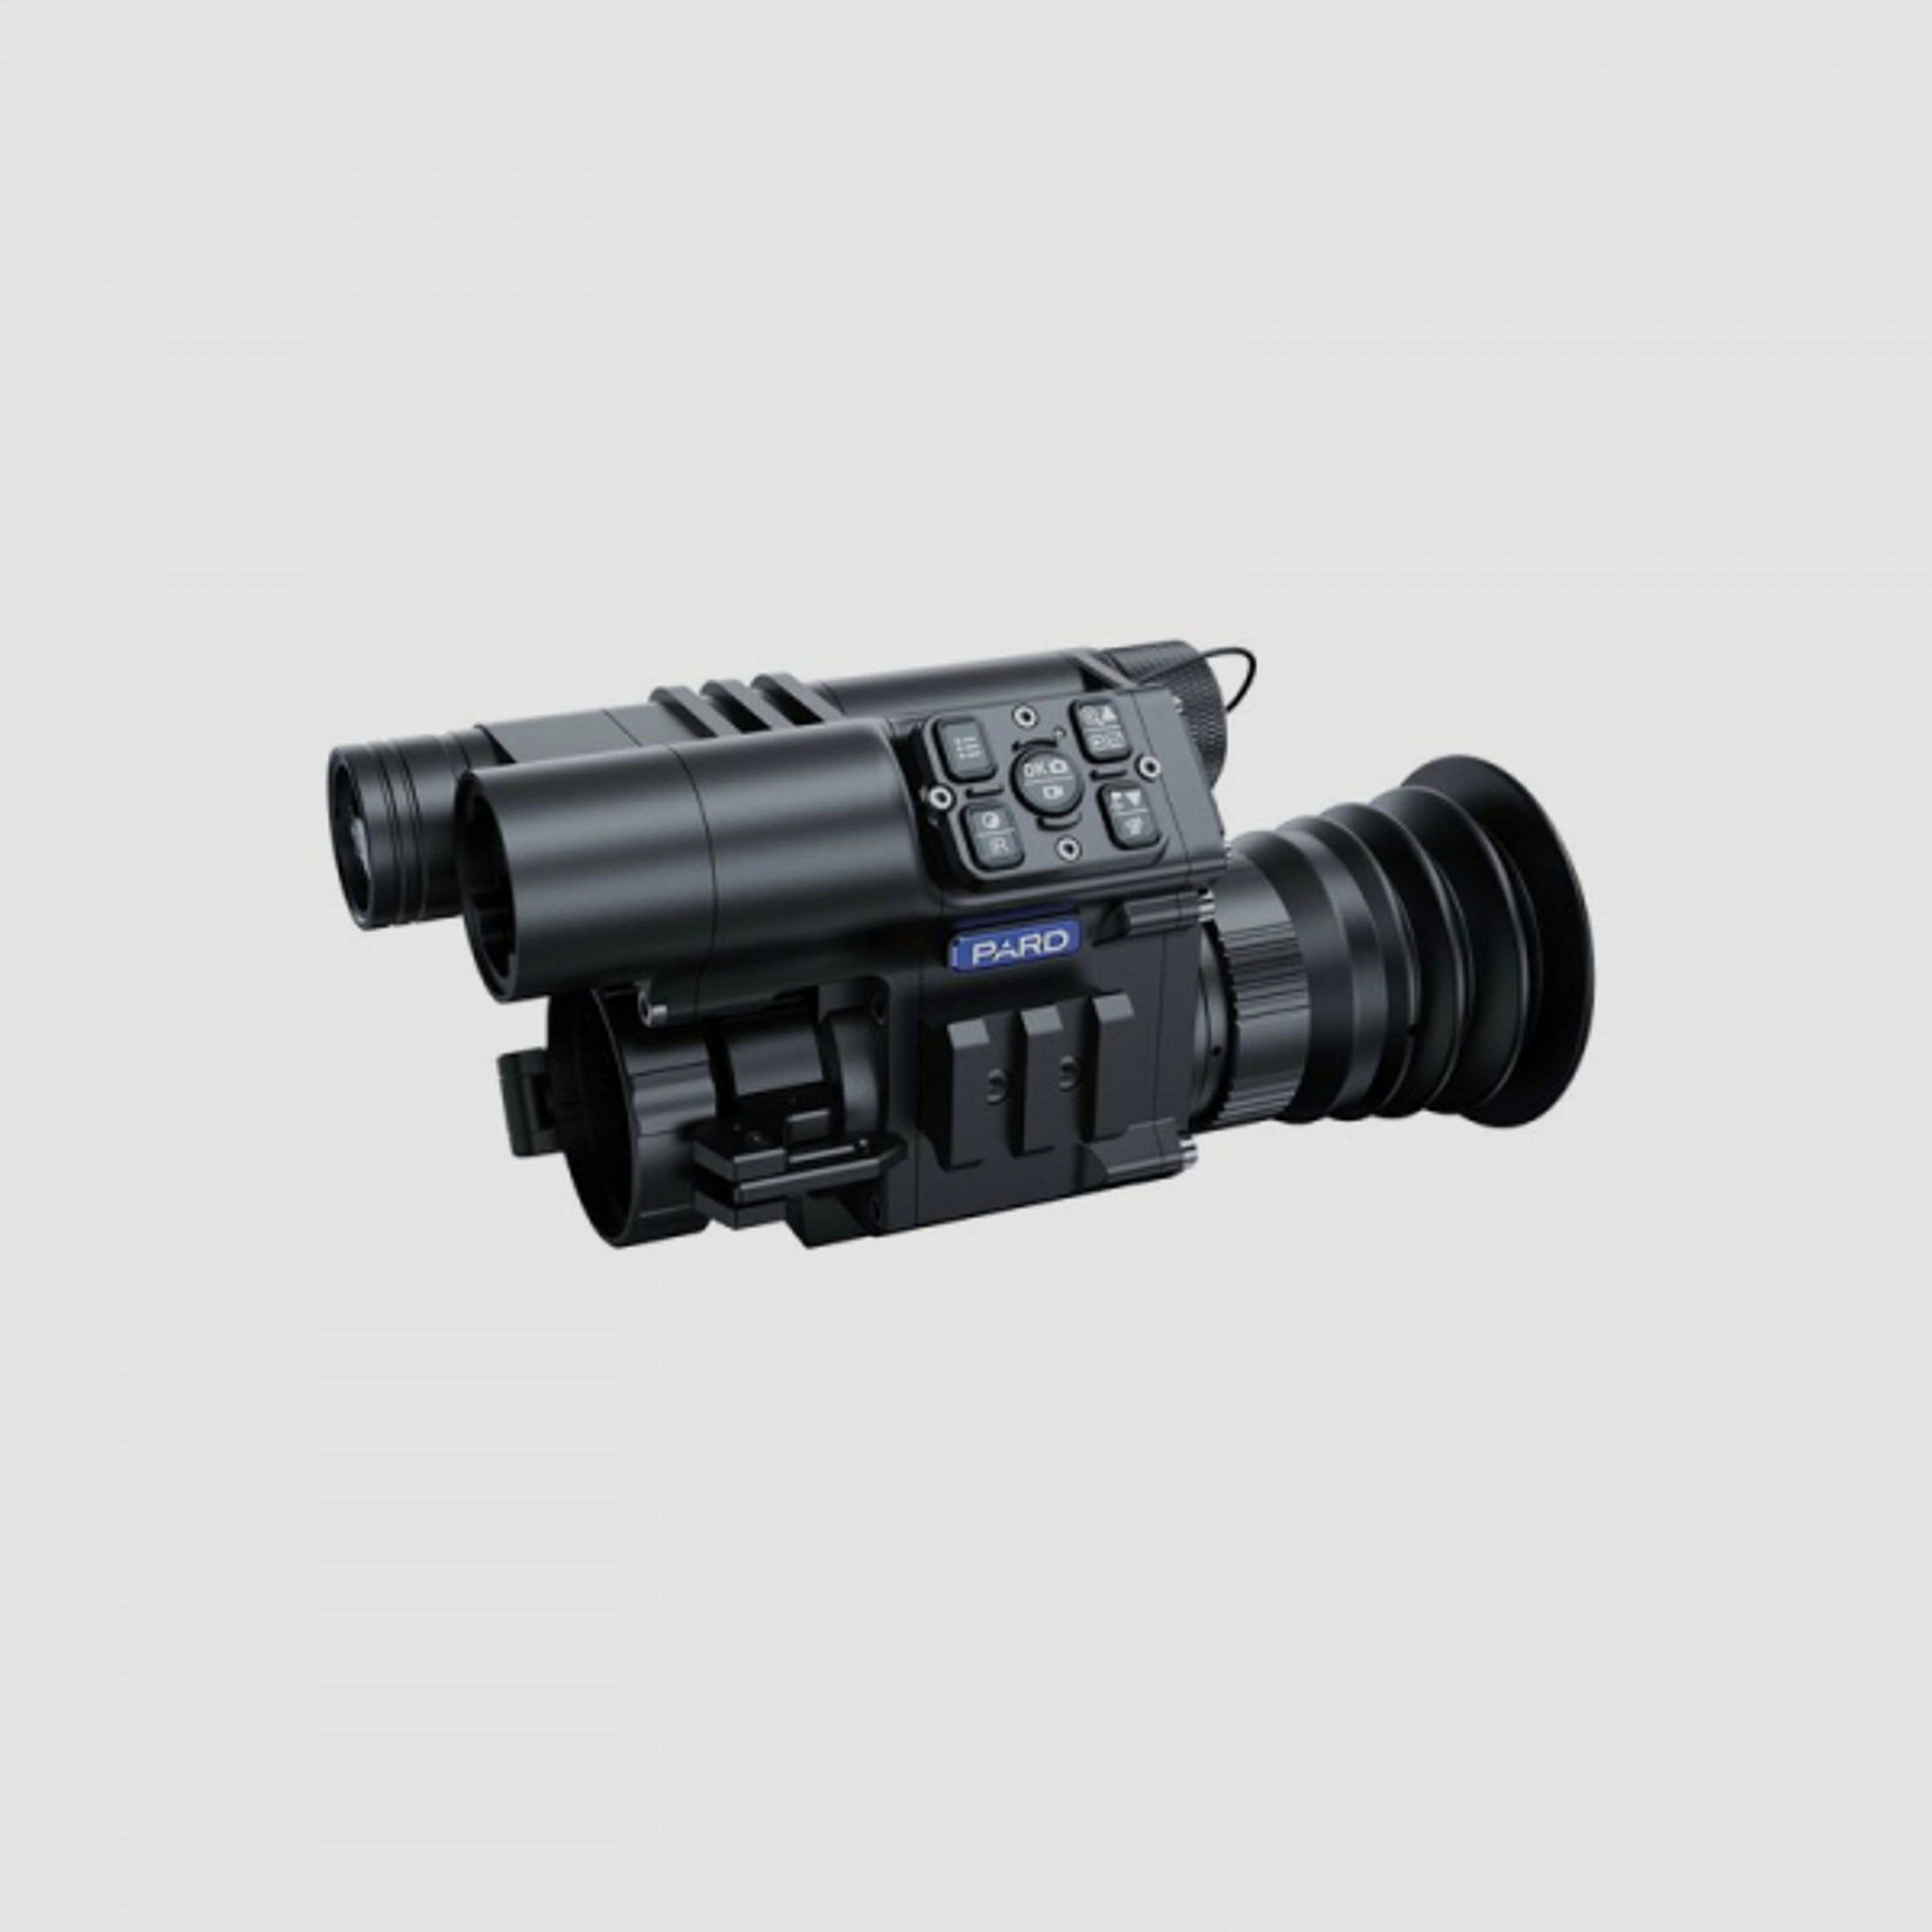 PARD FD1 LRF Clip-On mit Laser-Entfernungsmesser (digitales Nachtsicht-Vorsatzgerät), 850 nm inkl. R